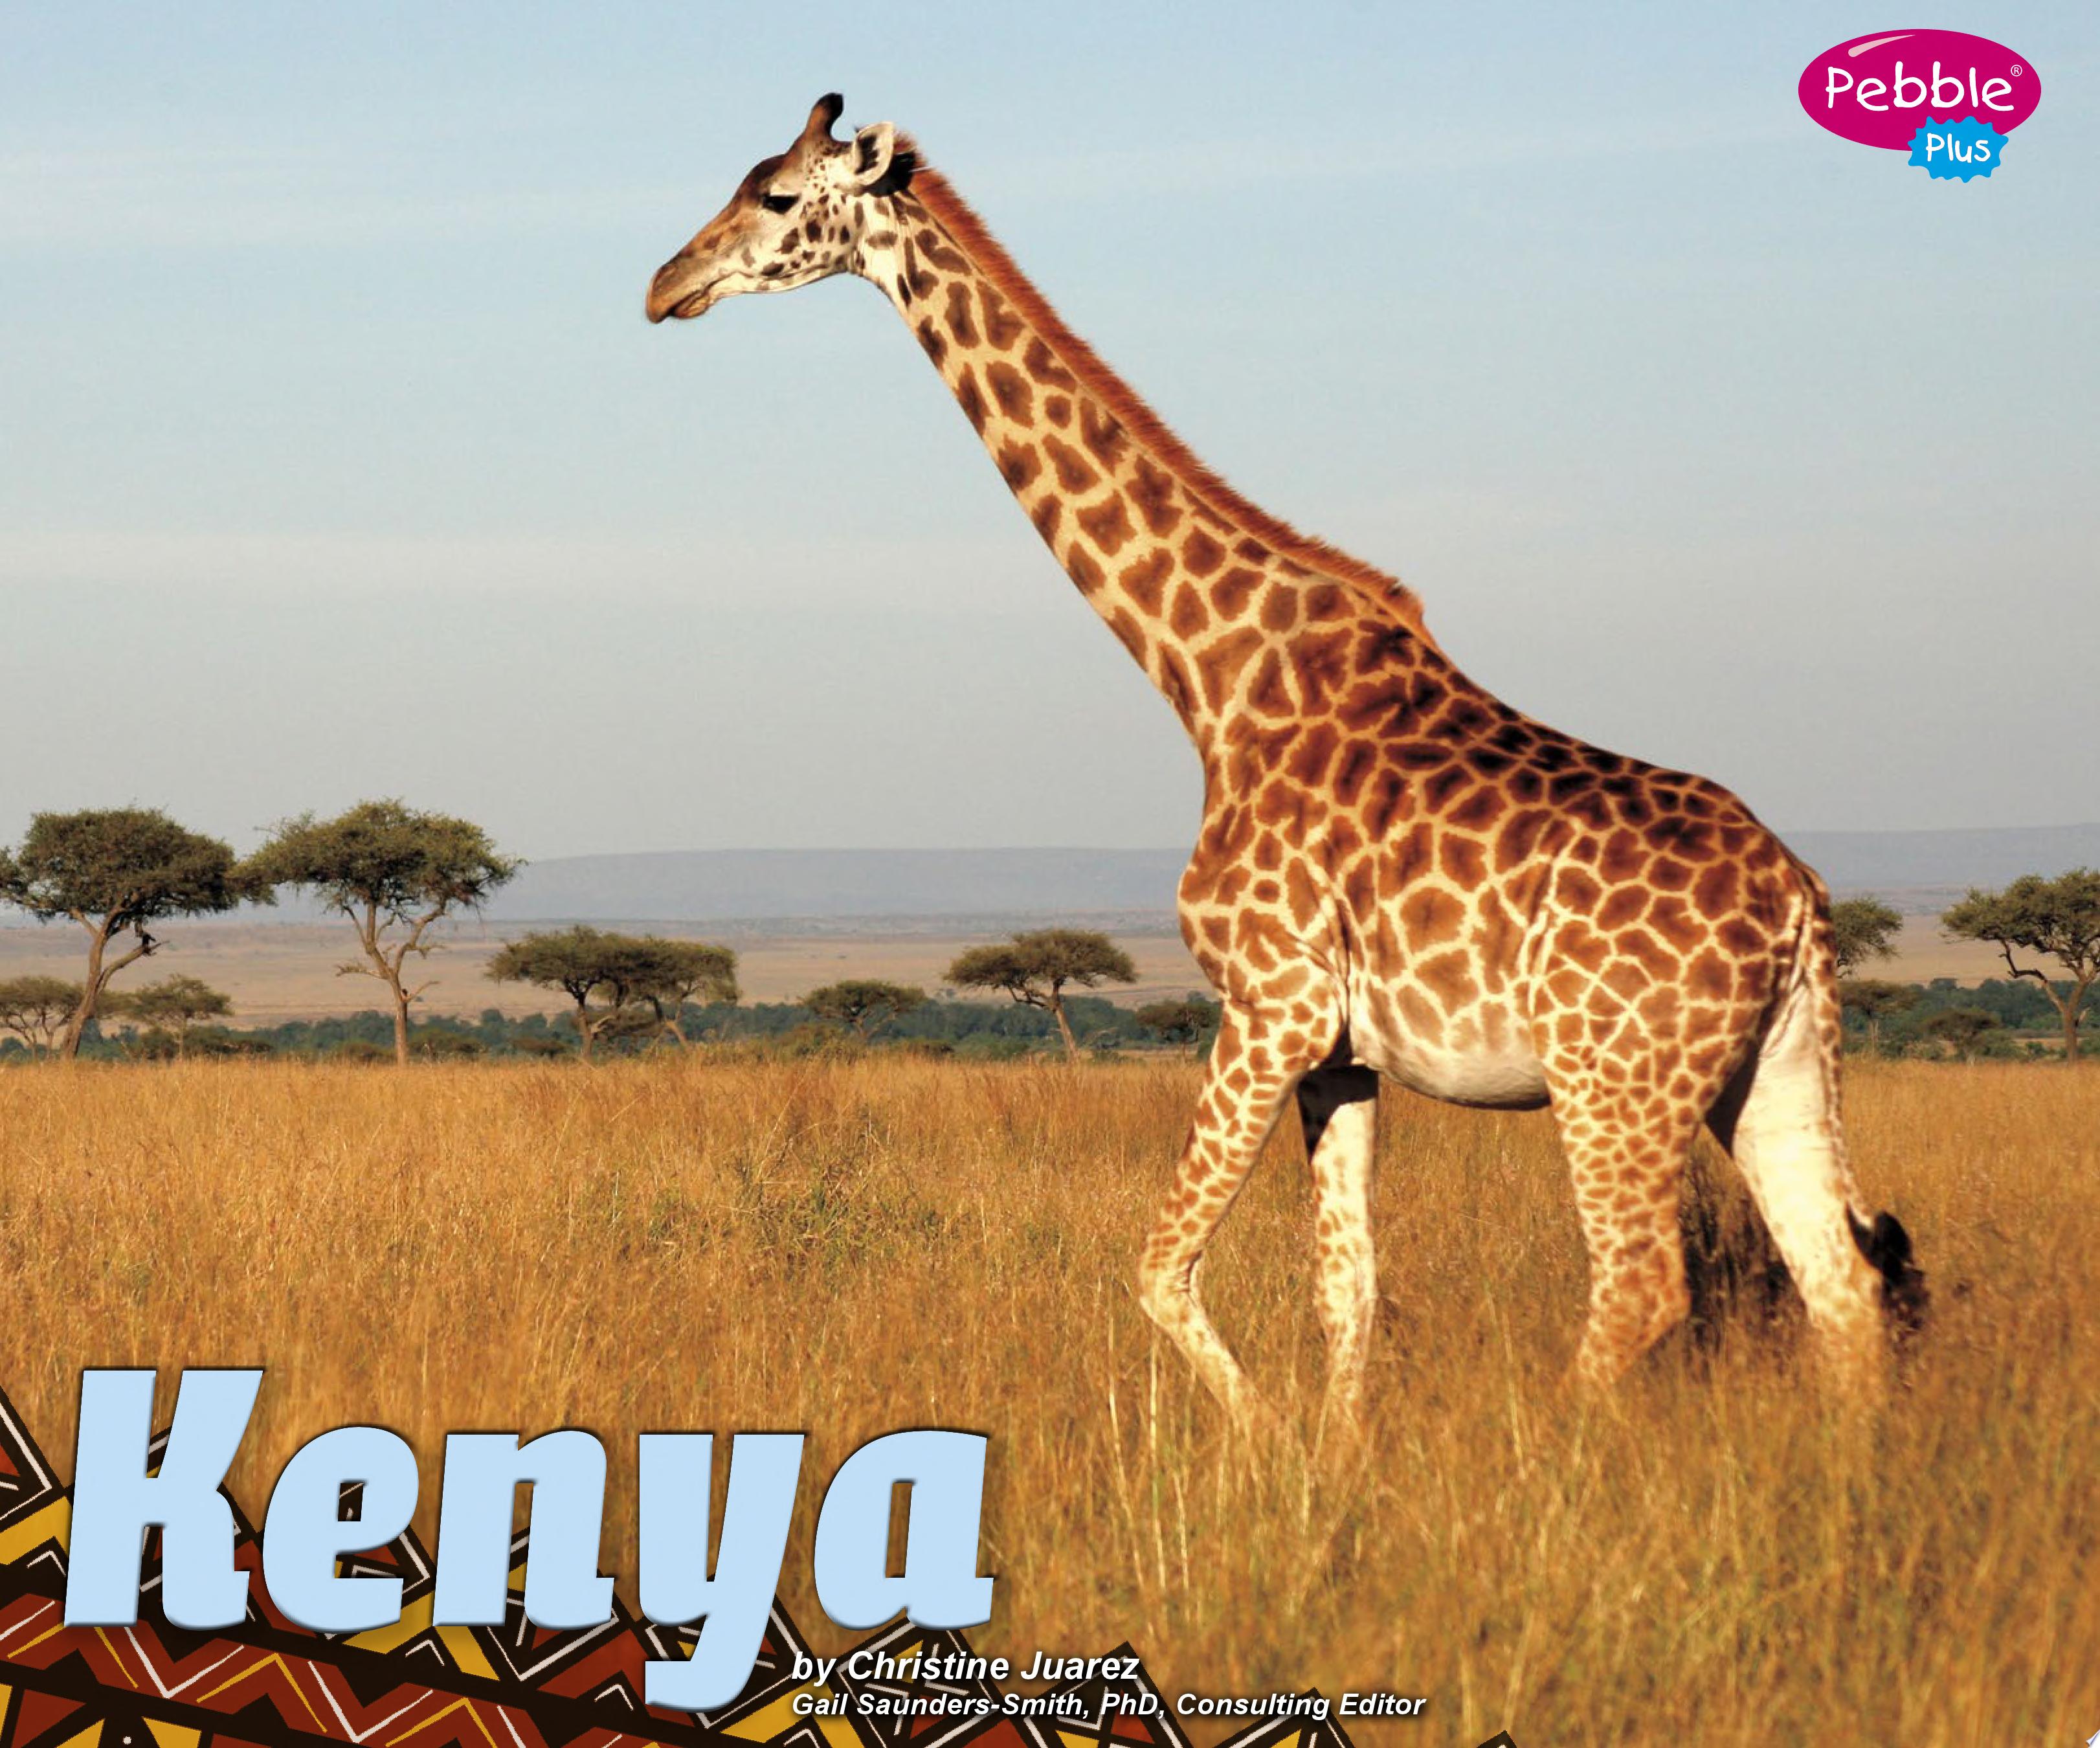 Image for "Kenya"